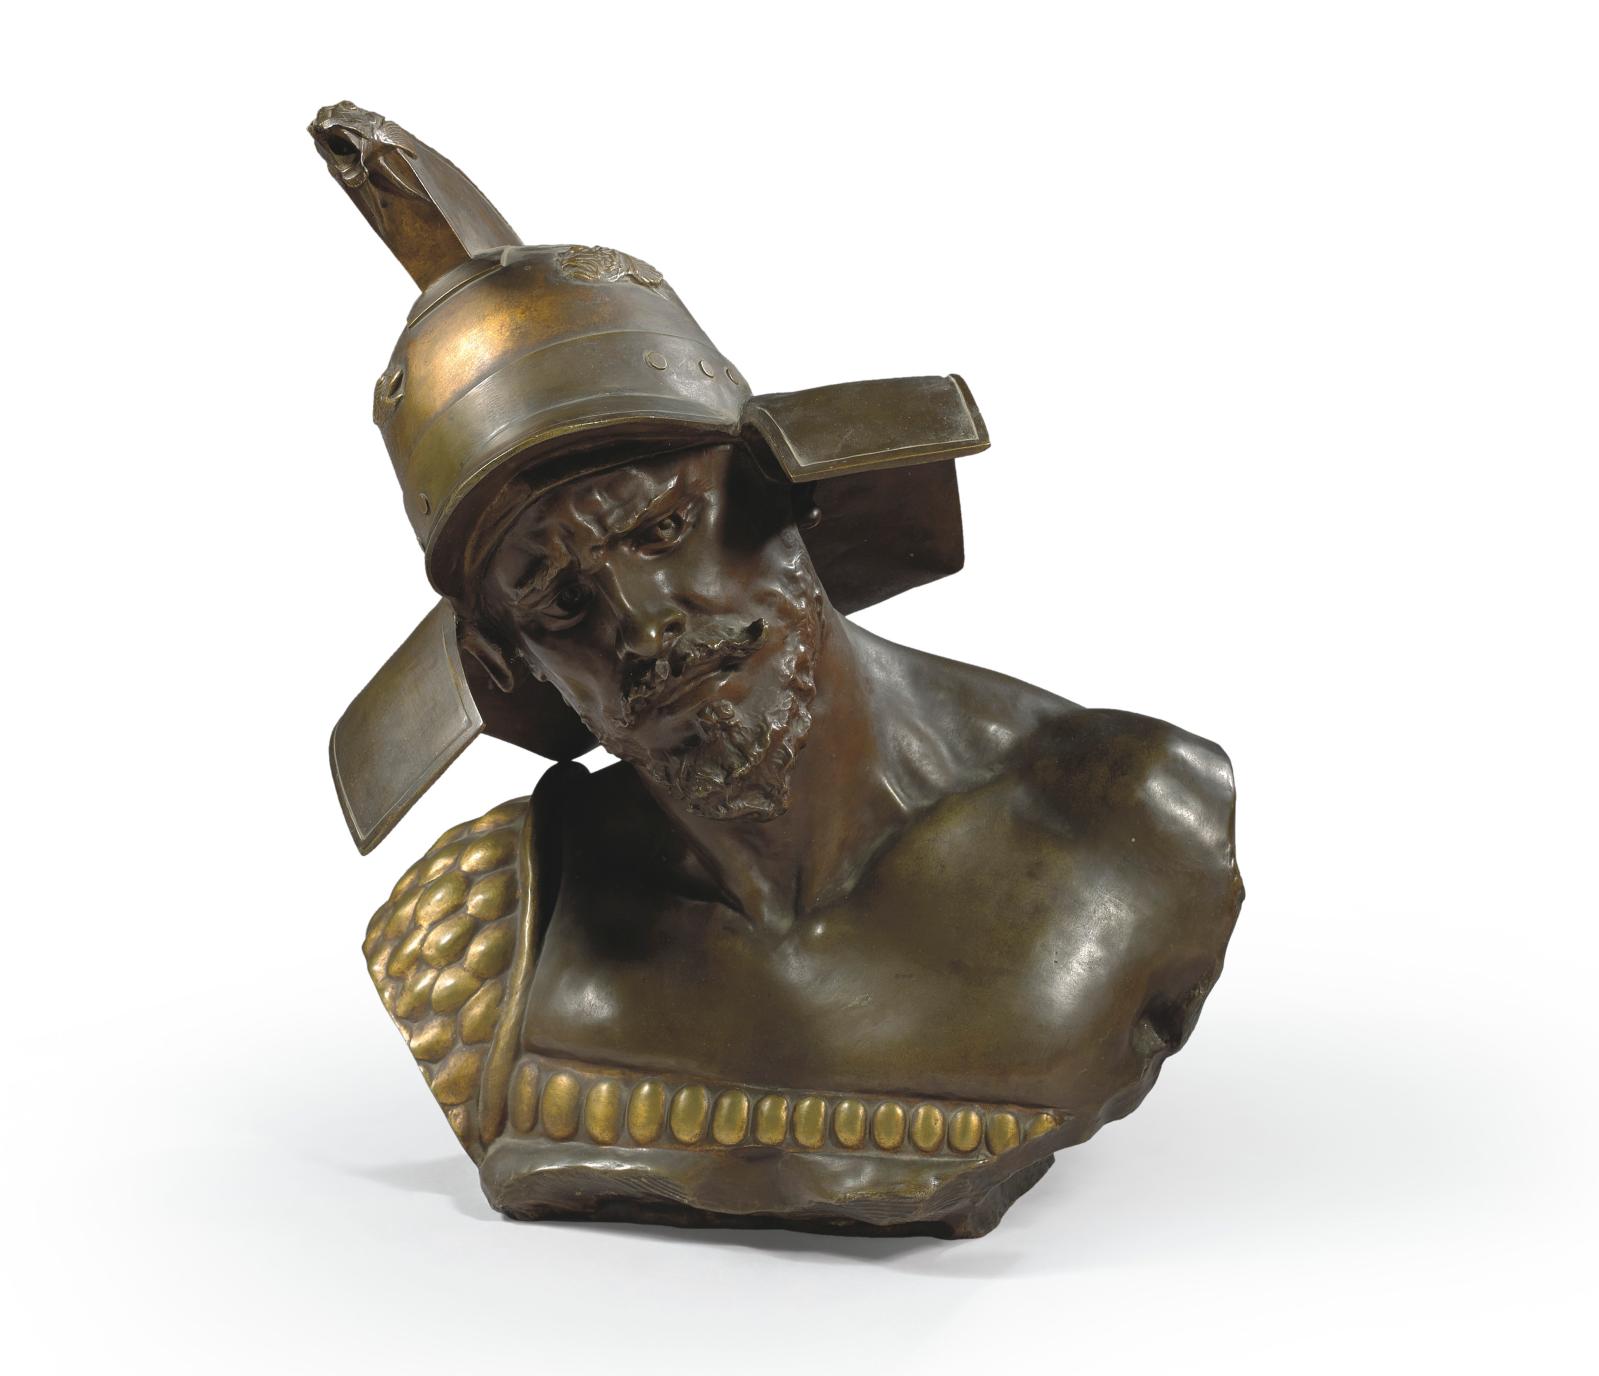 Richard Aurili (1834-vers 1914), Le Gladiateur, vers 1900, bronze à patine médaille, h. 61 cm.Paris, Drouot, 25 mars 2015. Maigret (Thierrry de) OVV. 